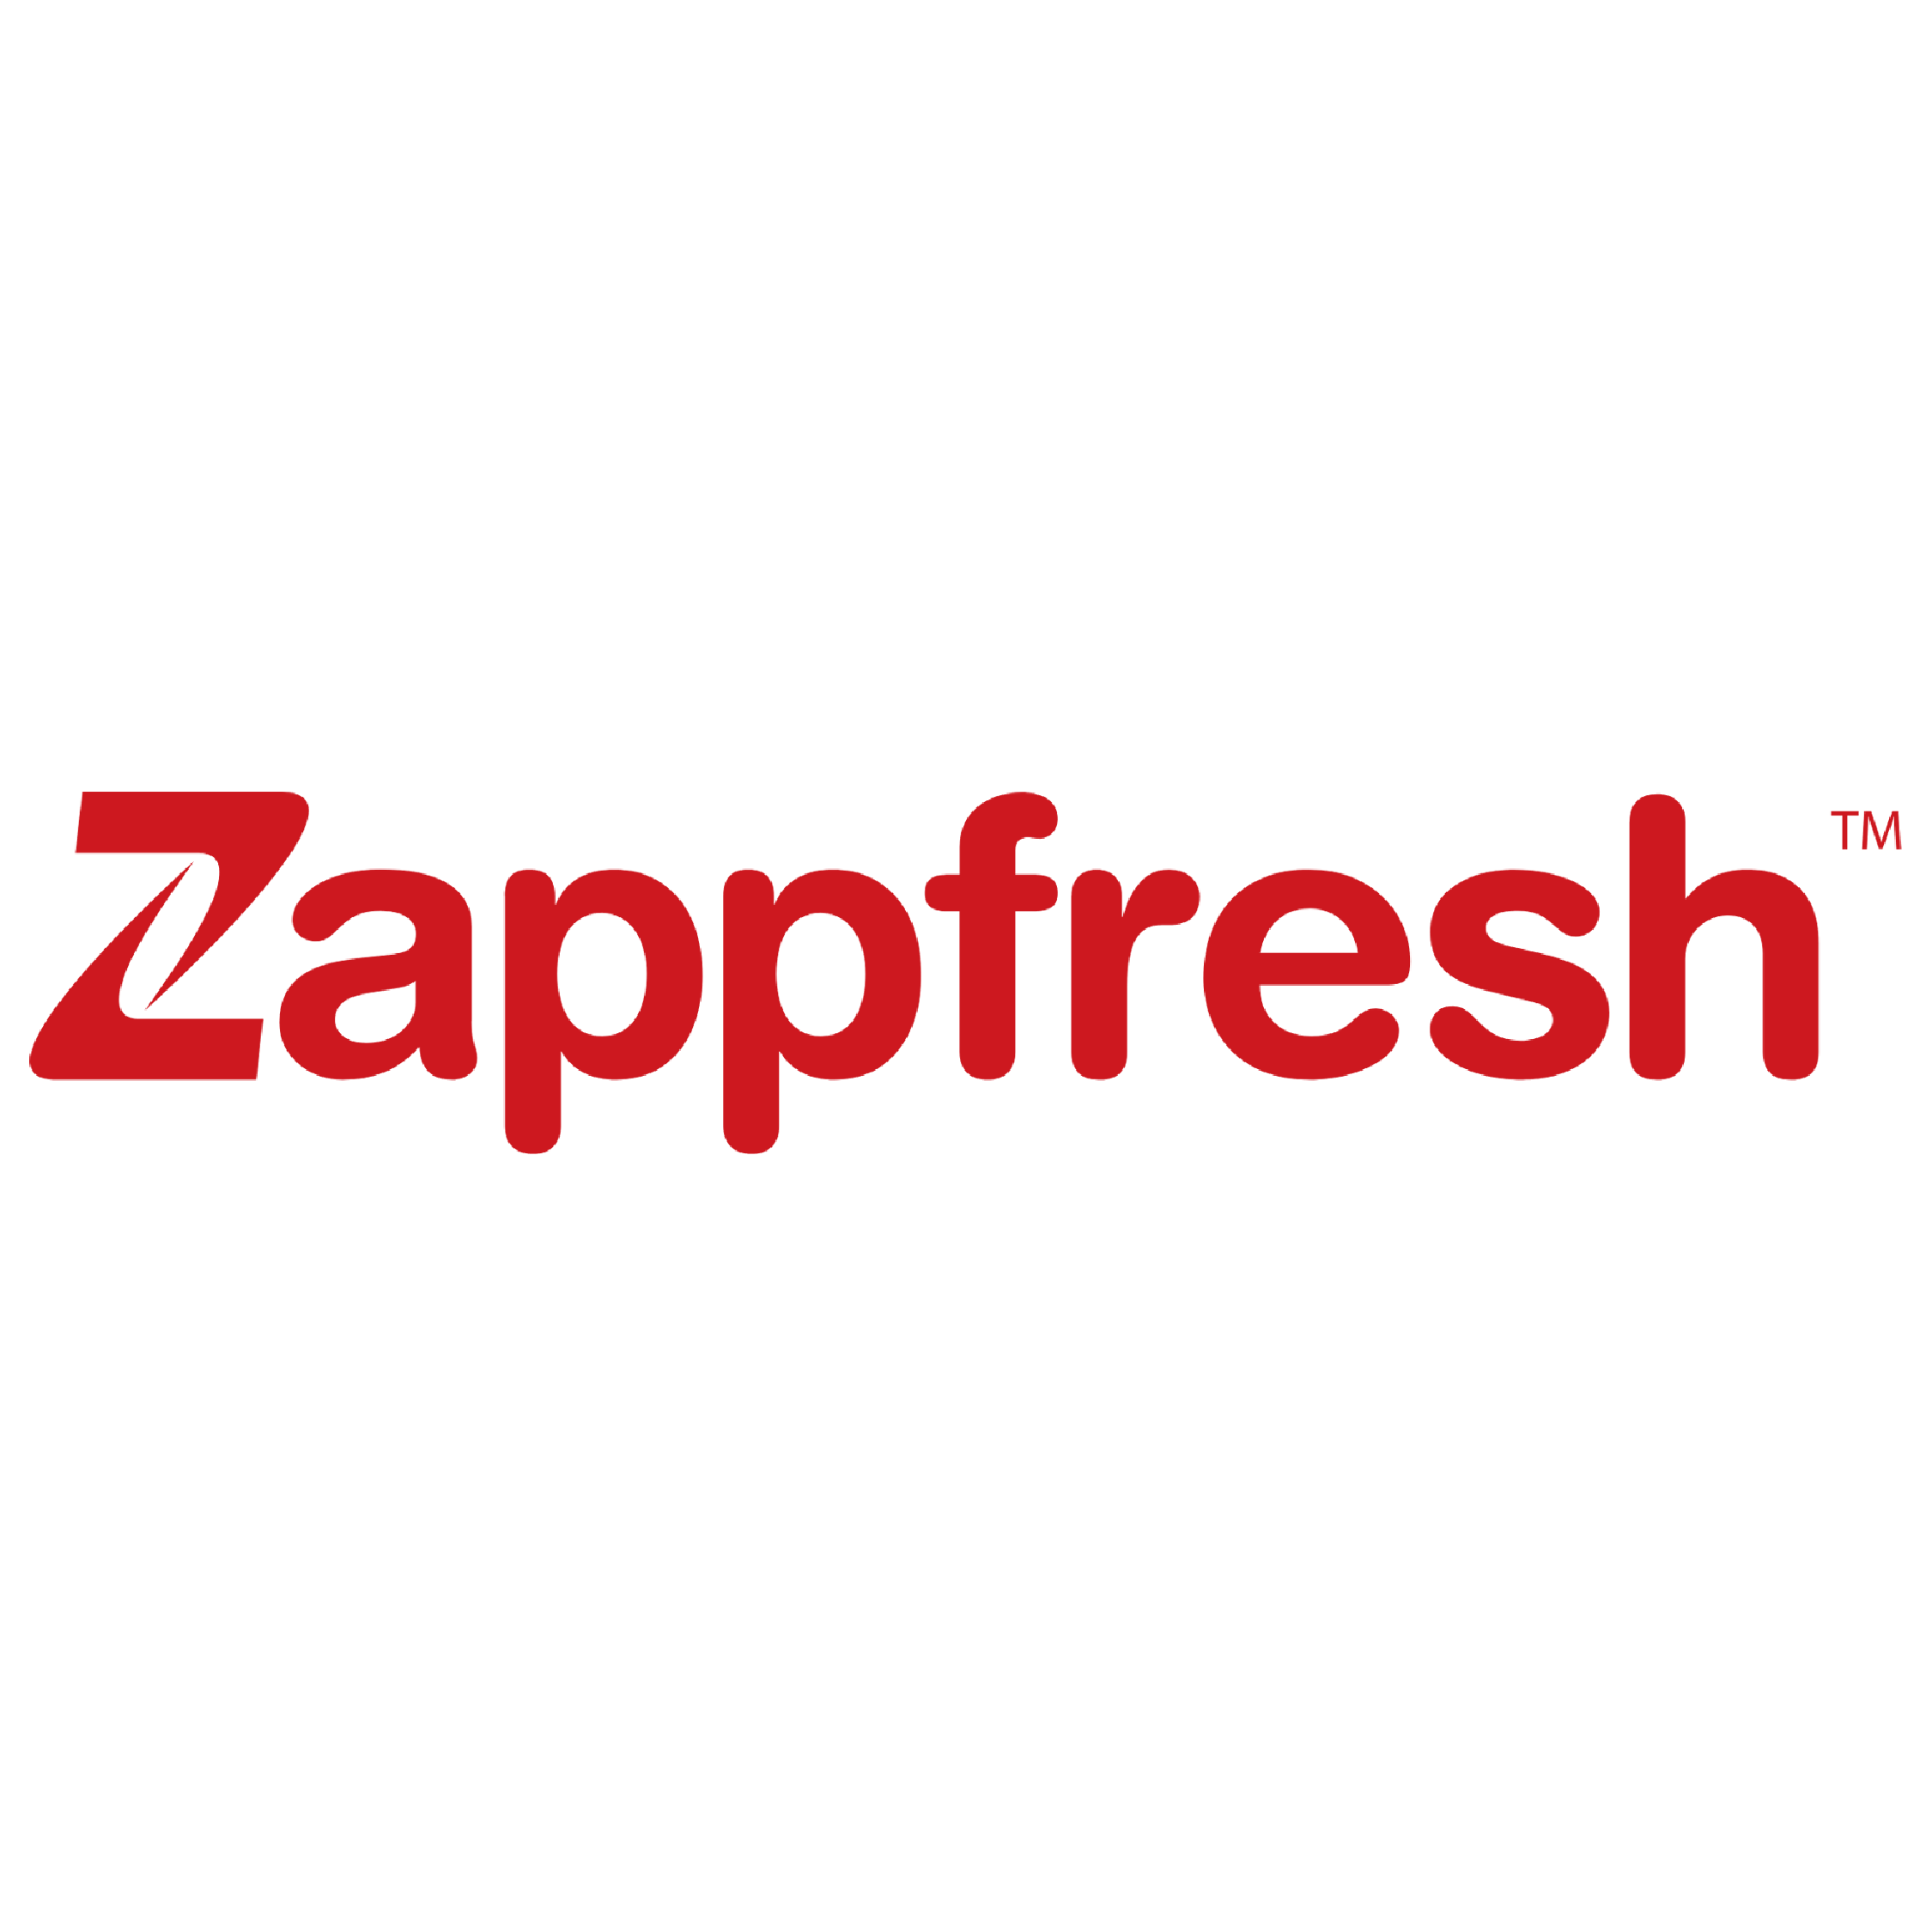 Order Fresh Chicken Online At Best Price | Zappfresh - Delhi Home & Garden